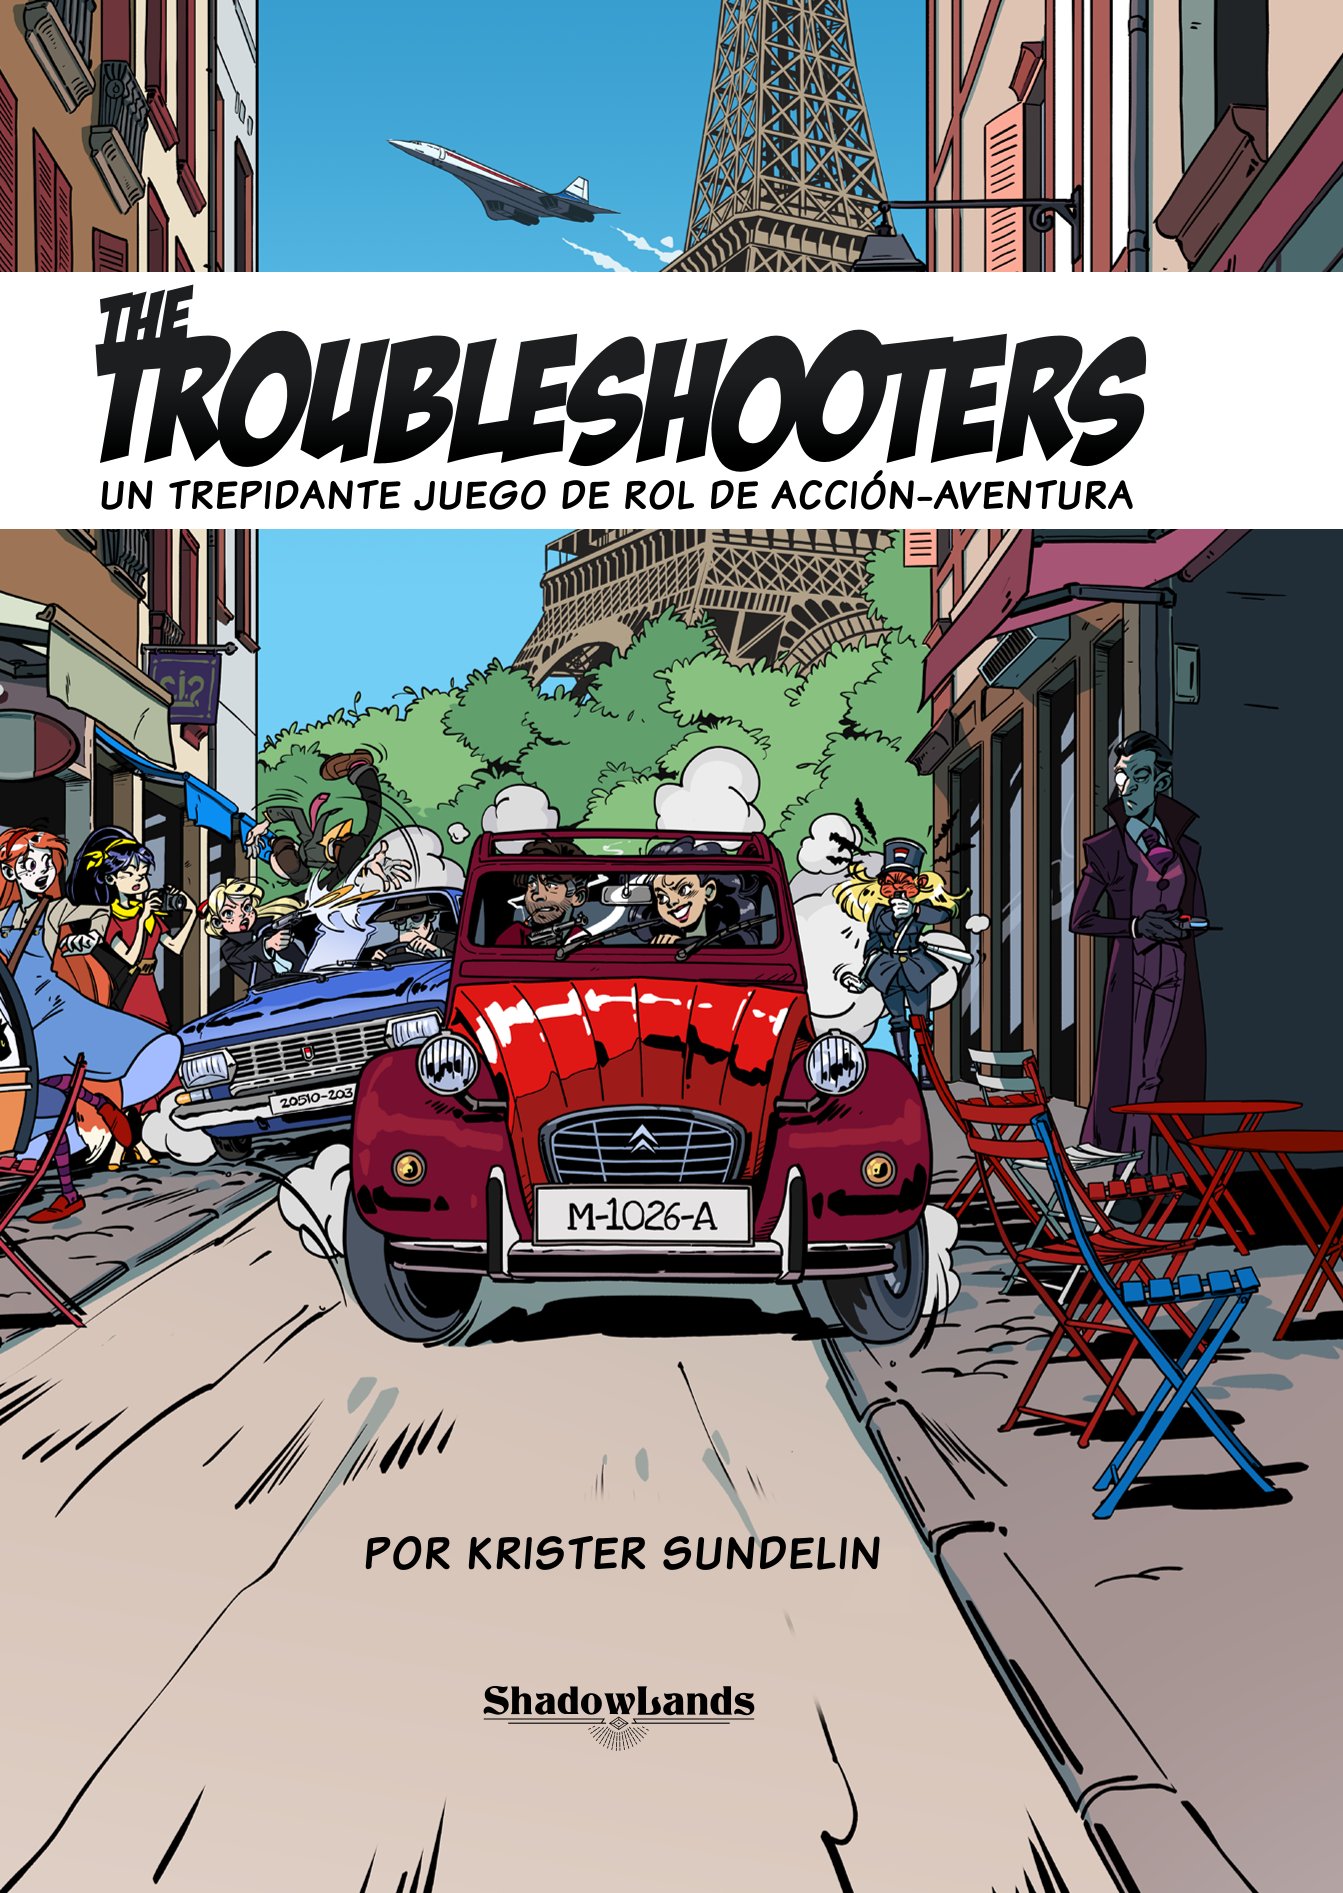 Portada del juego The Troubleshooters, dónde podemos ver un coche rojo conduciendo a toda velocidad por las calles de París, mientras la policía lo persigue.